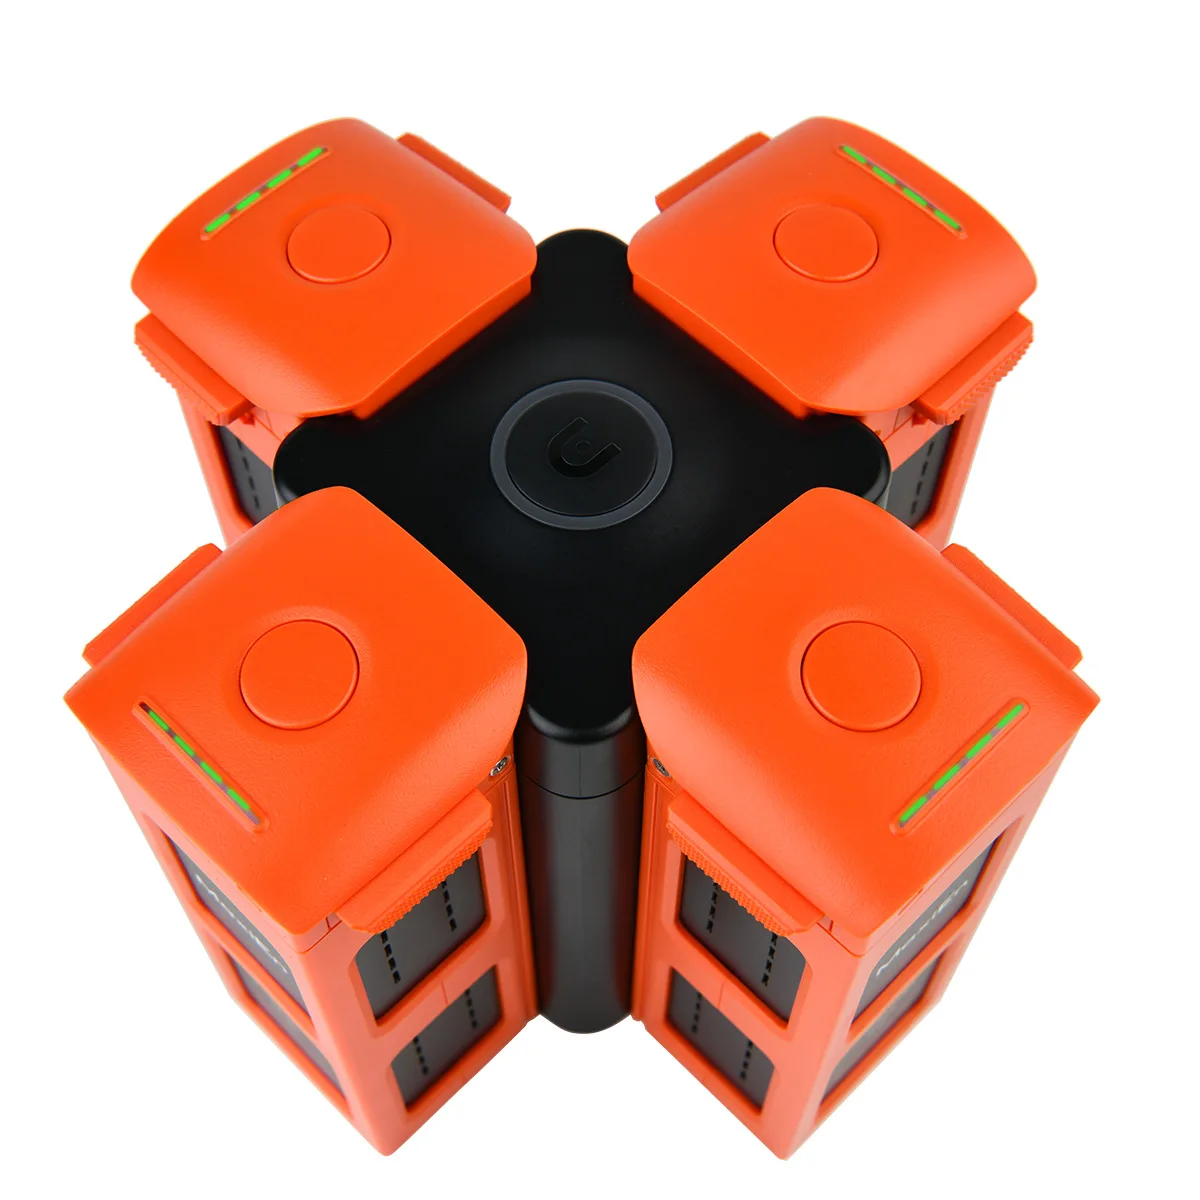 Autel Robotics EVO II/2 Pro Drone batería cargadores de alimentación concentrador de carga rápida Muelle 